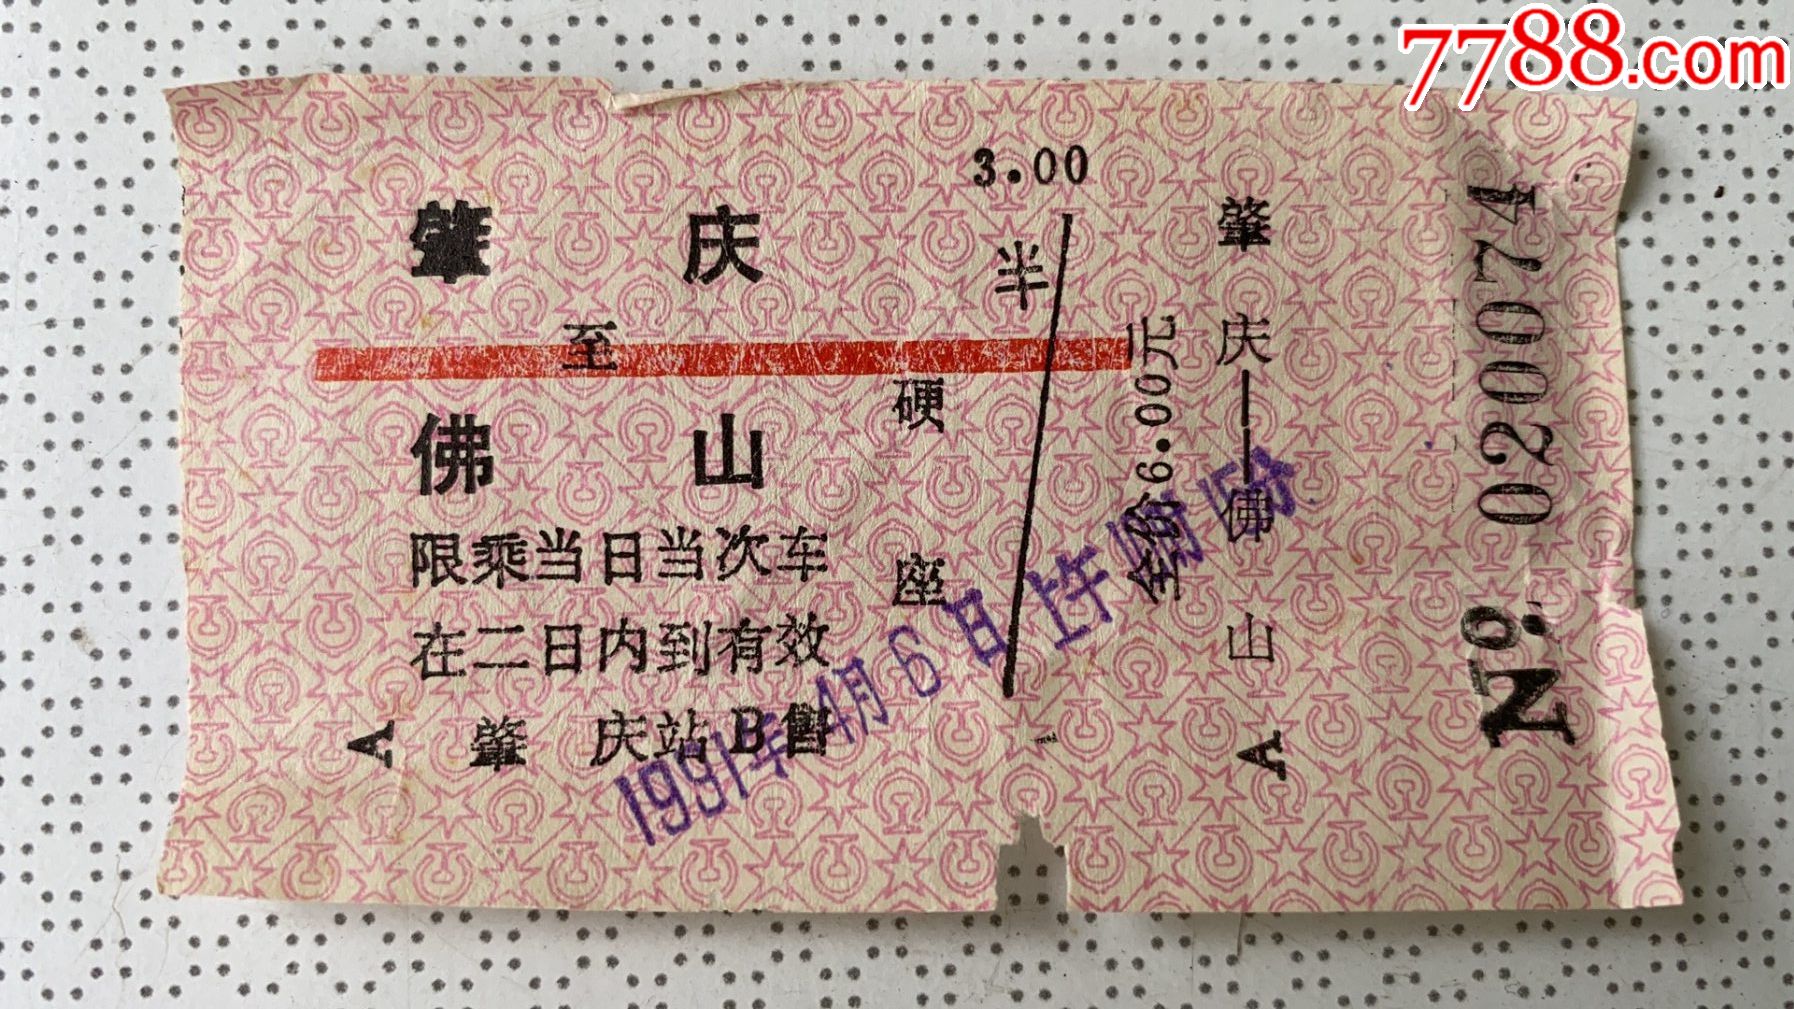 白色火车票 库存例证. 插画 包括有 位子, 营销, 蟒蛇, 剪切, 通过, 乘客, 模板, 离开, 空白的 - 177111994